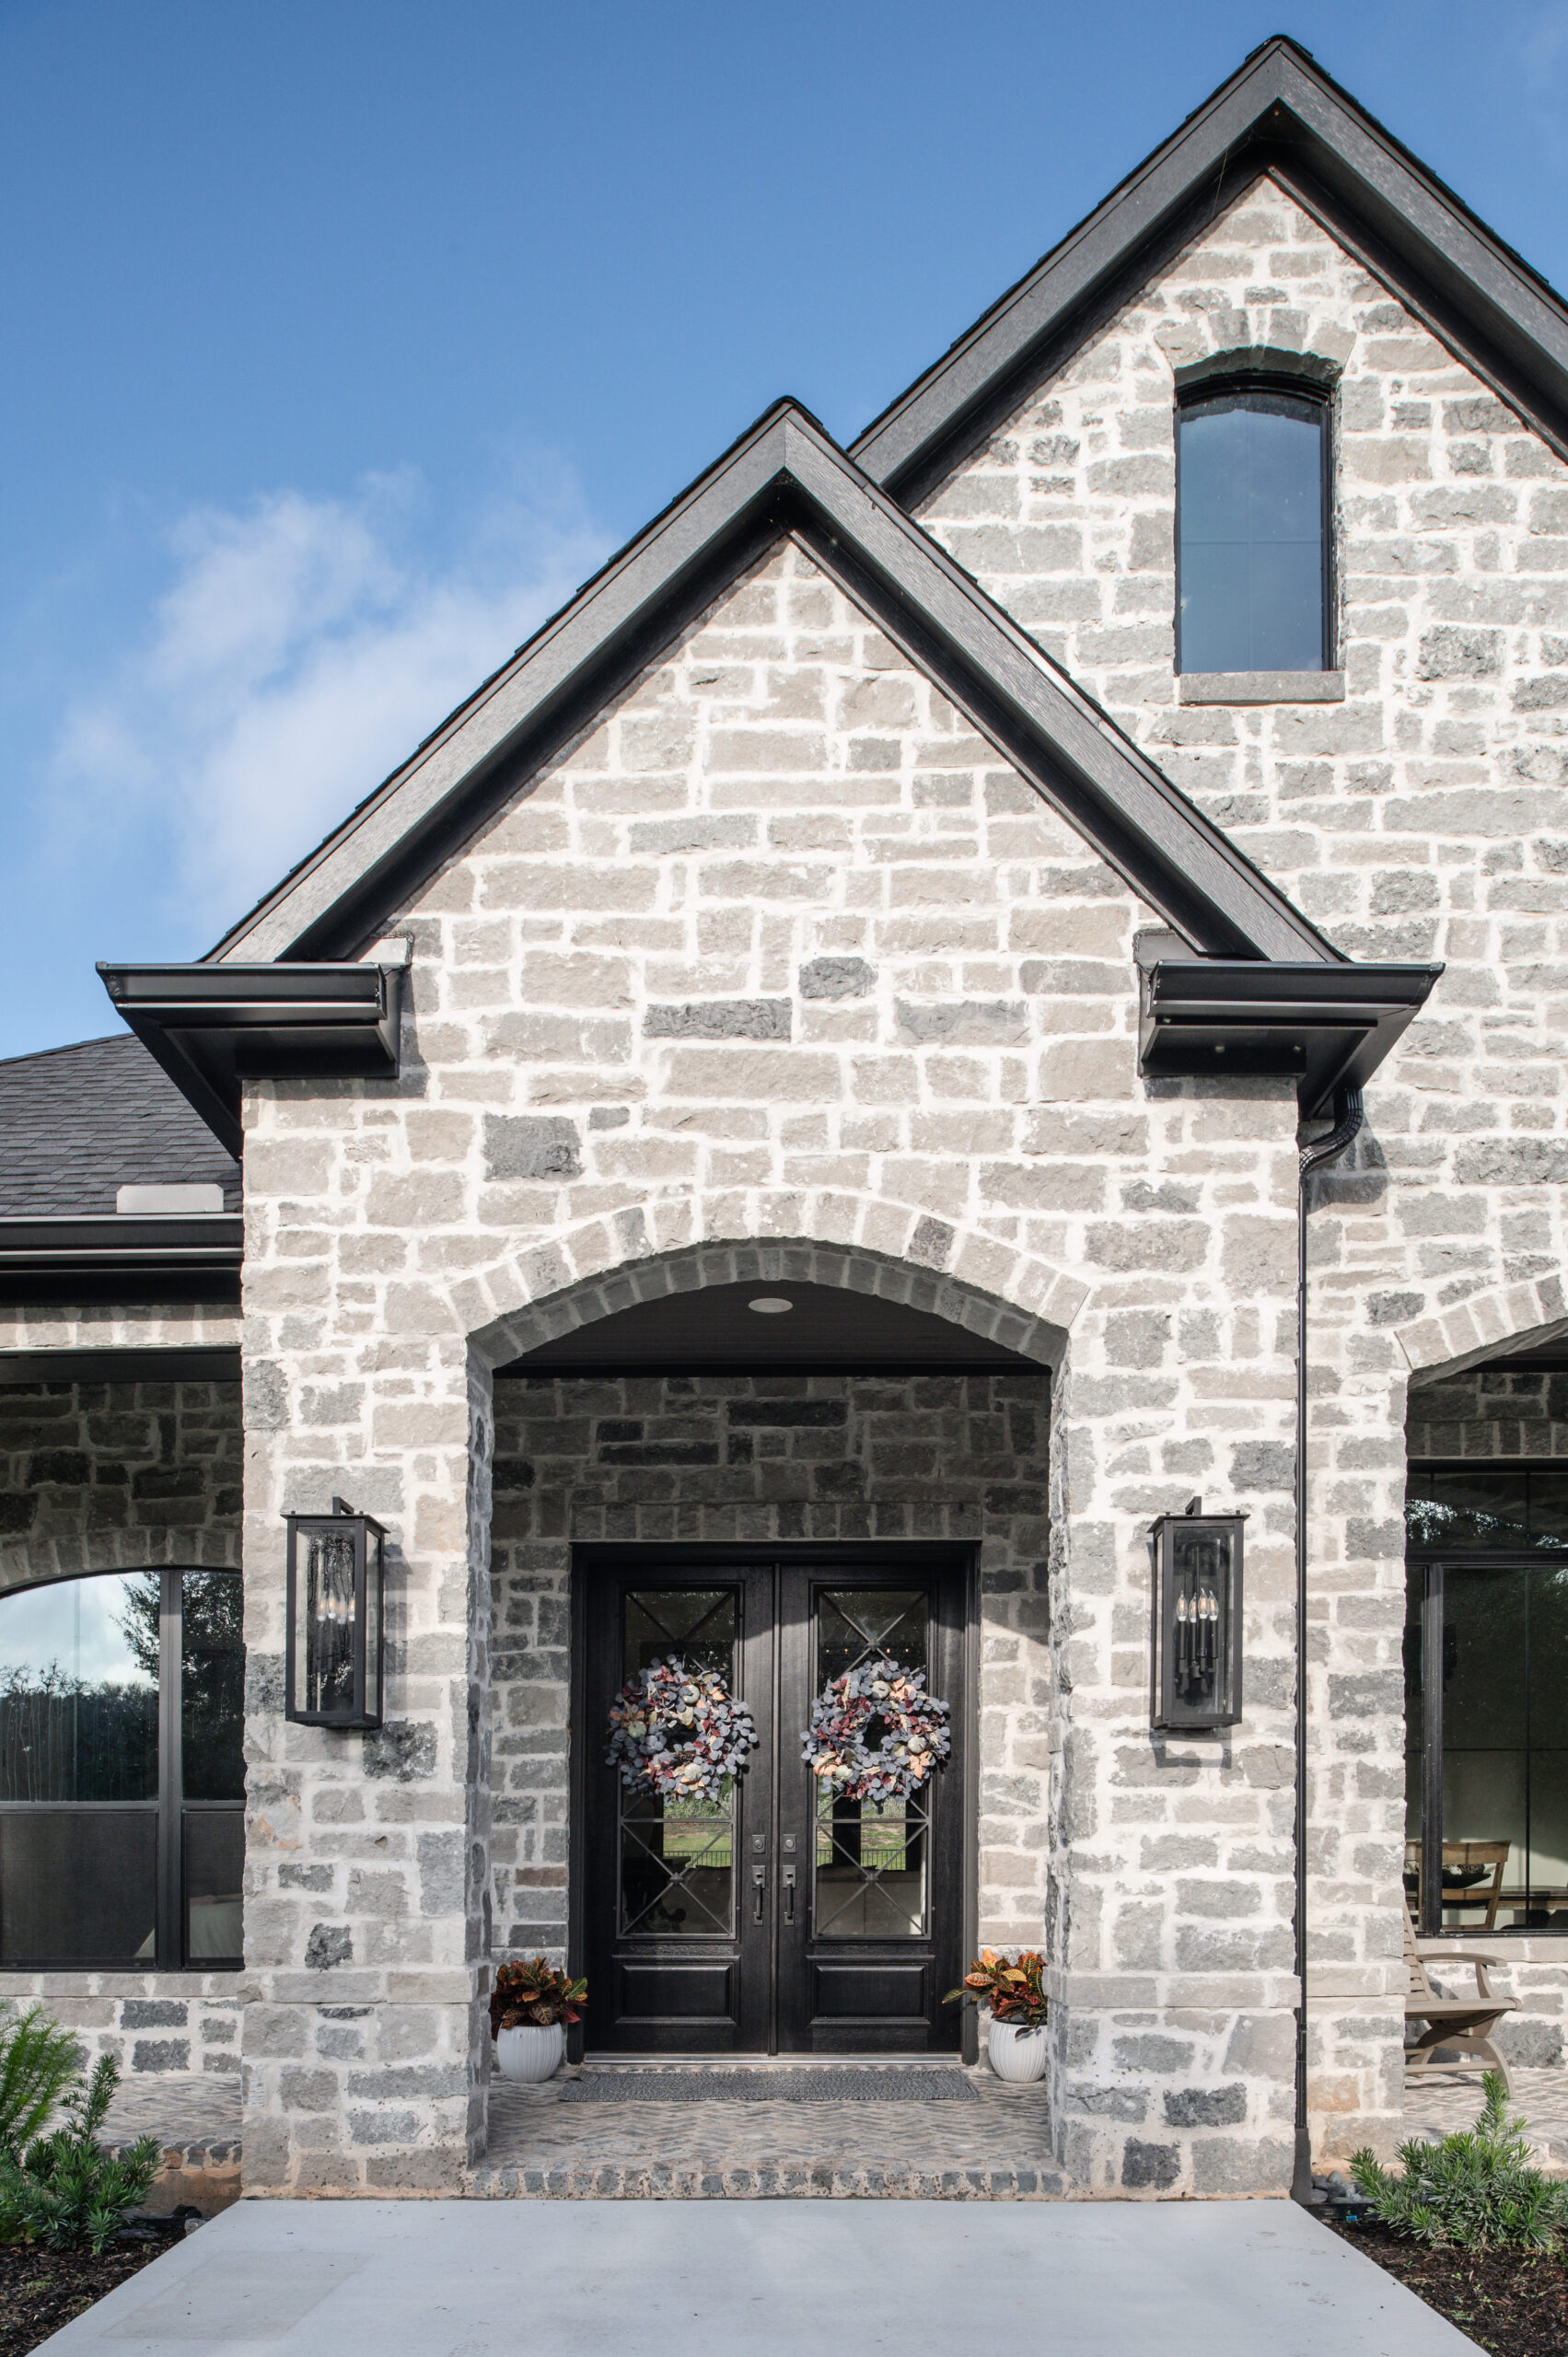 Beautiful front door entryway with exterior brickwork